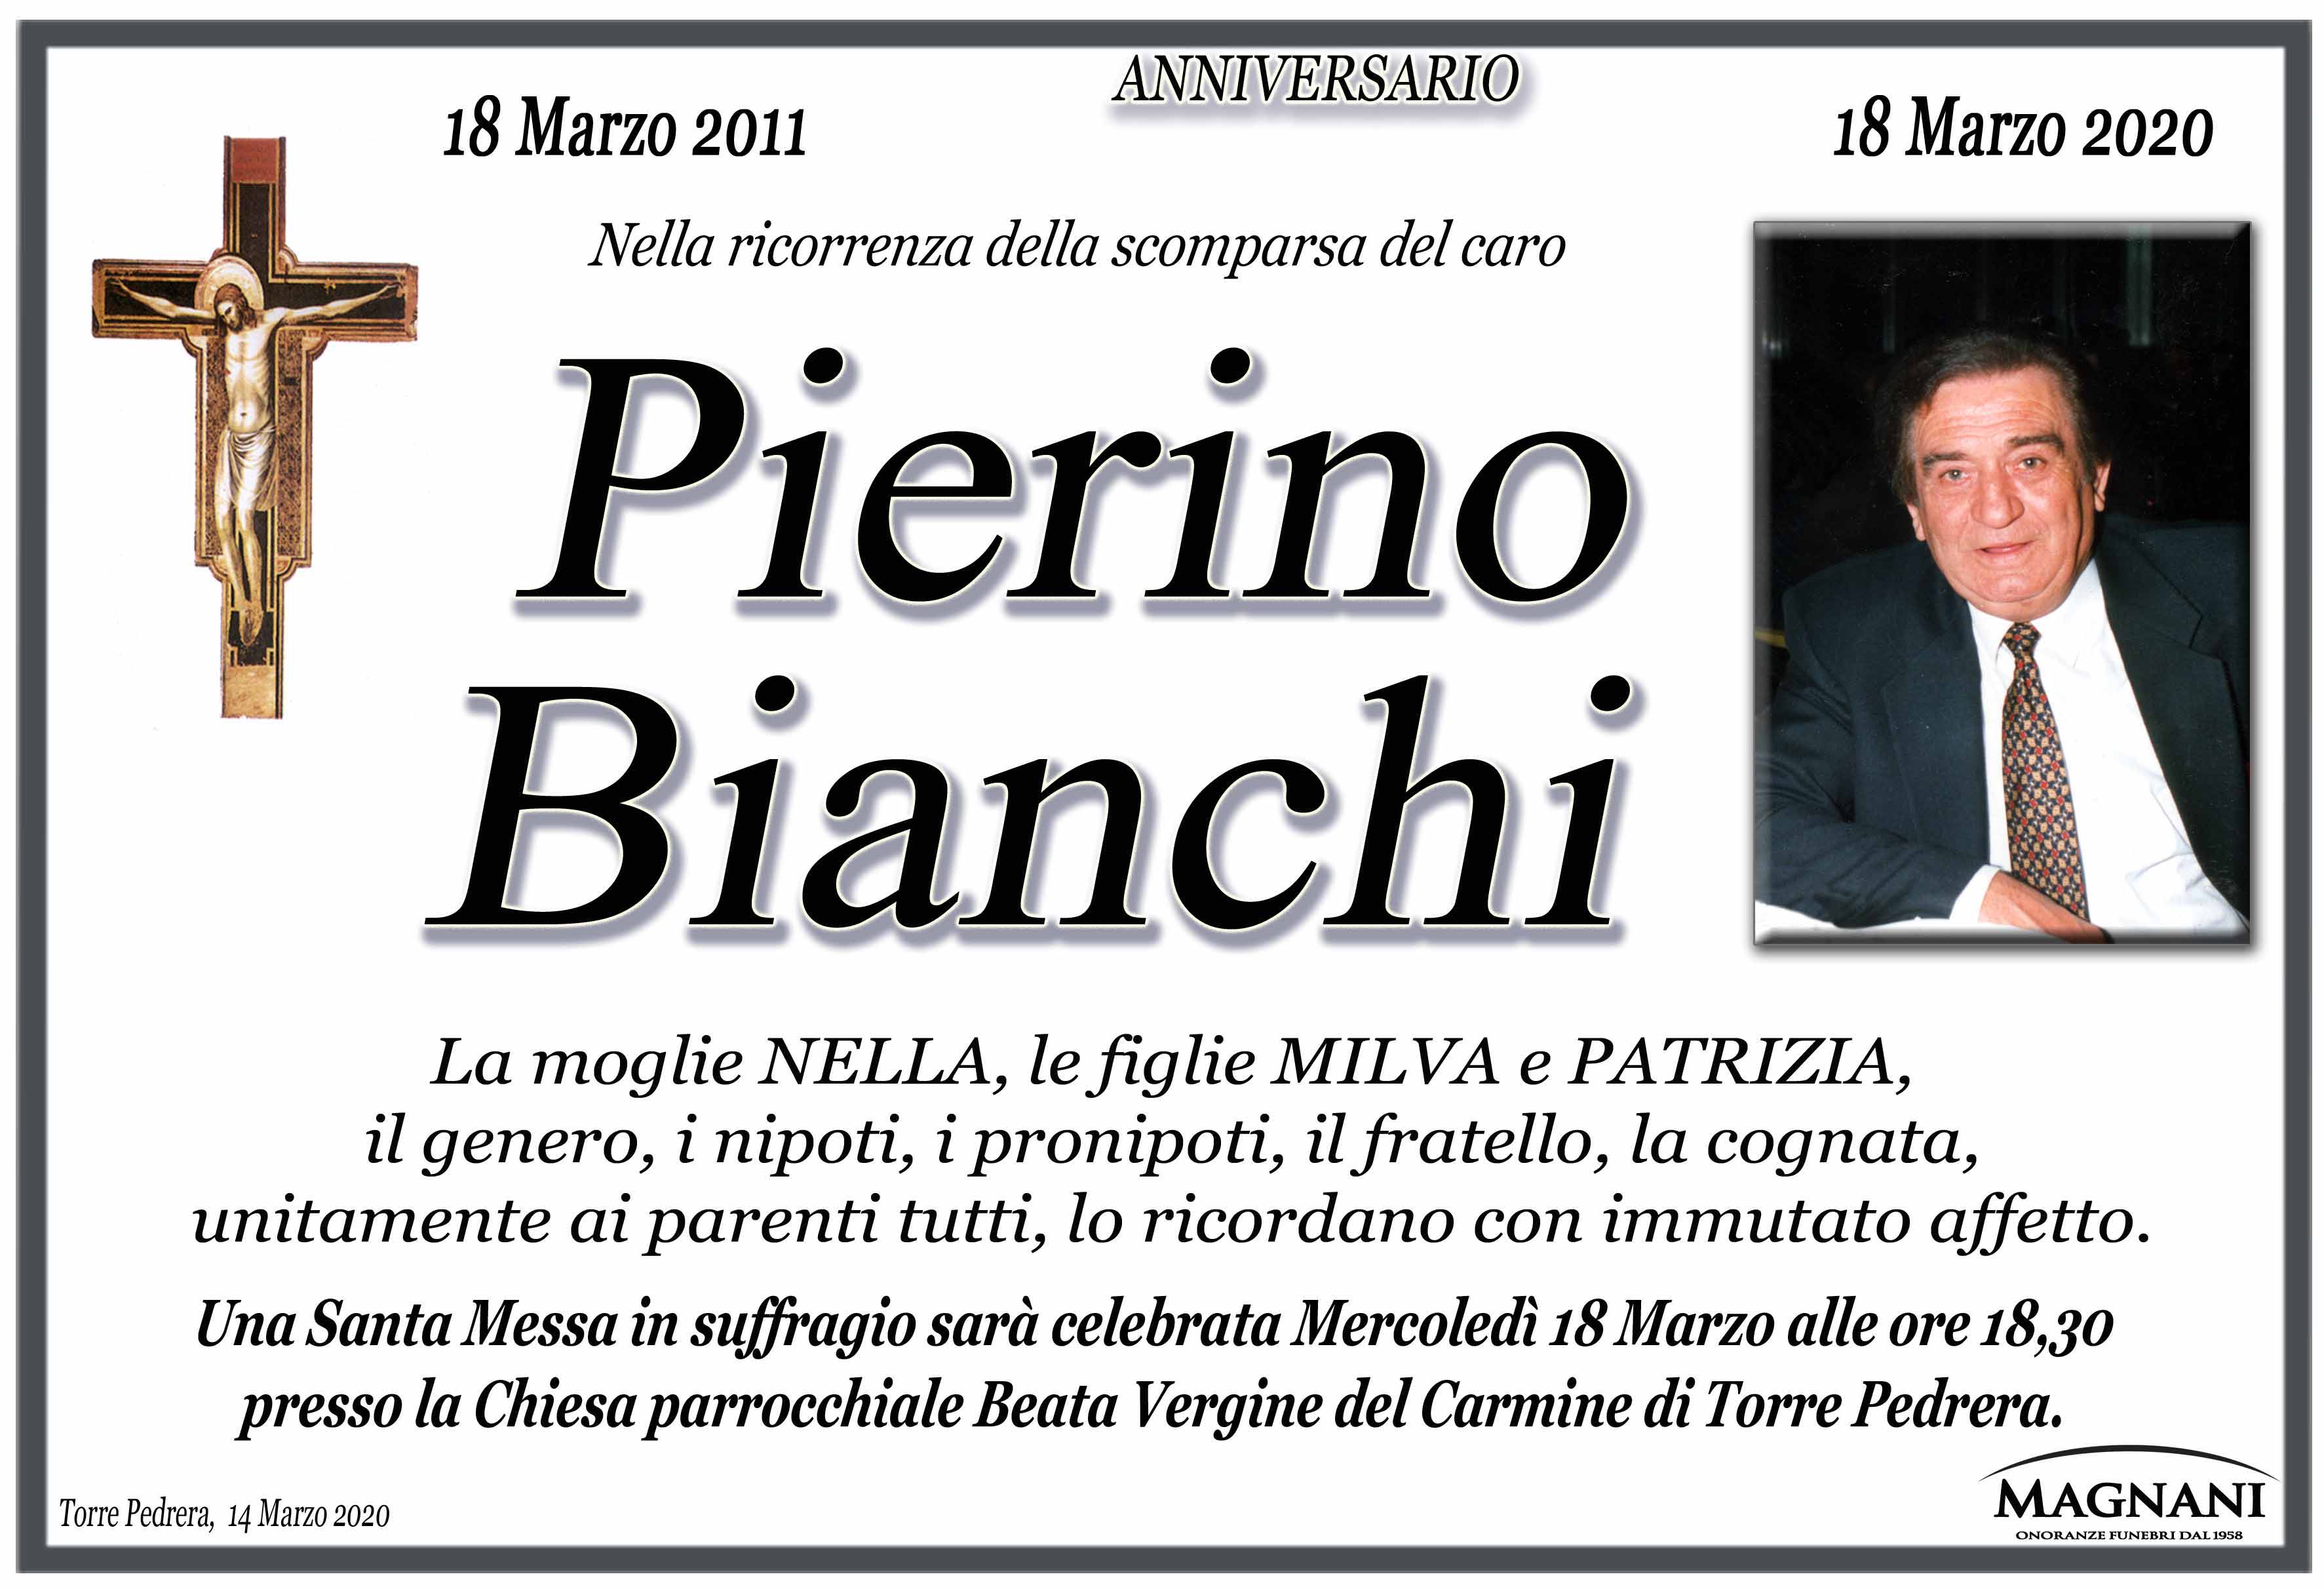 Pierino Bianchi